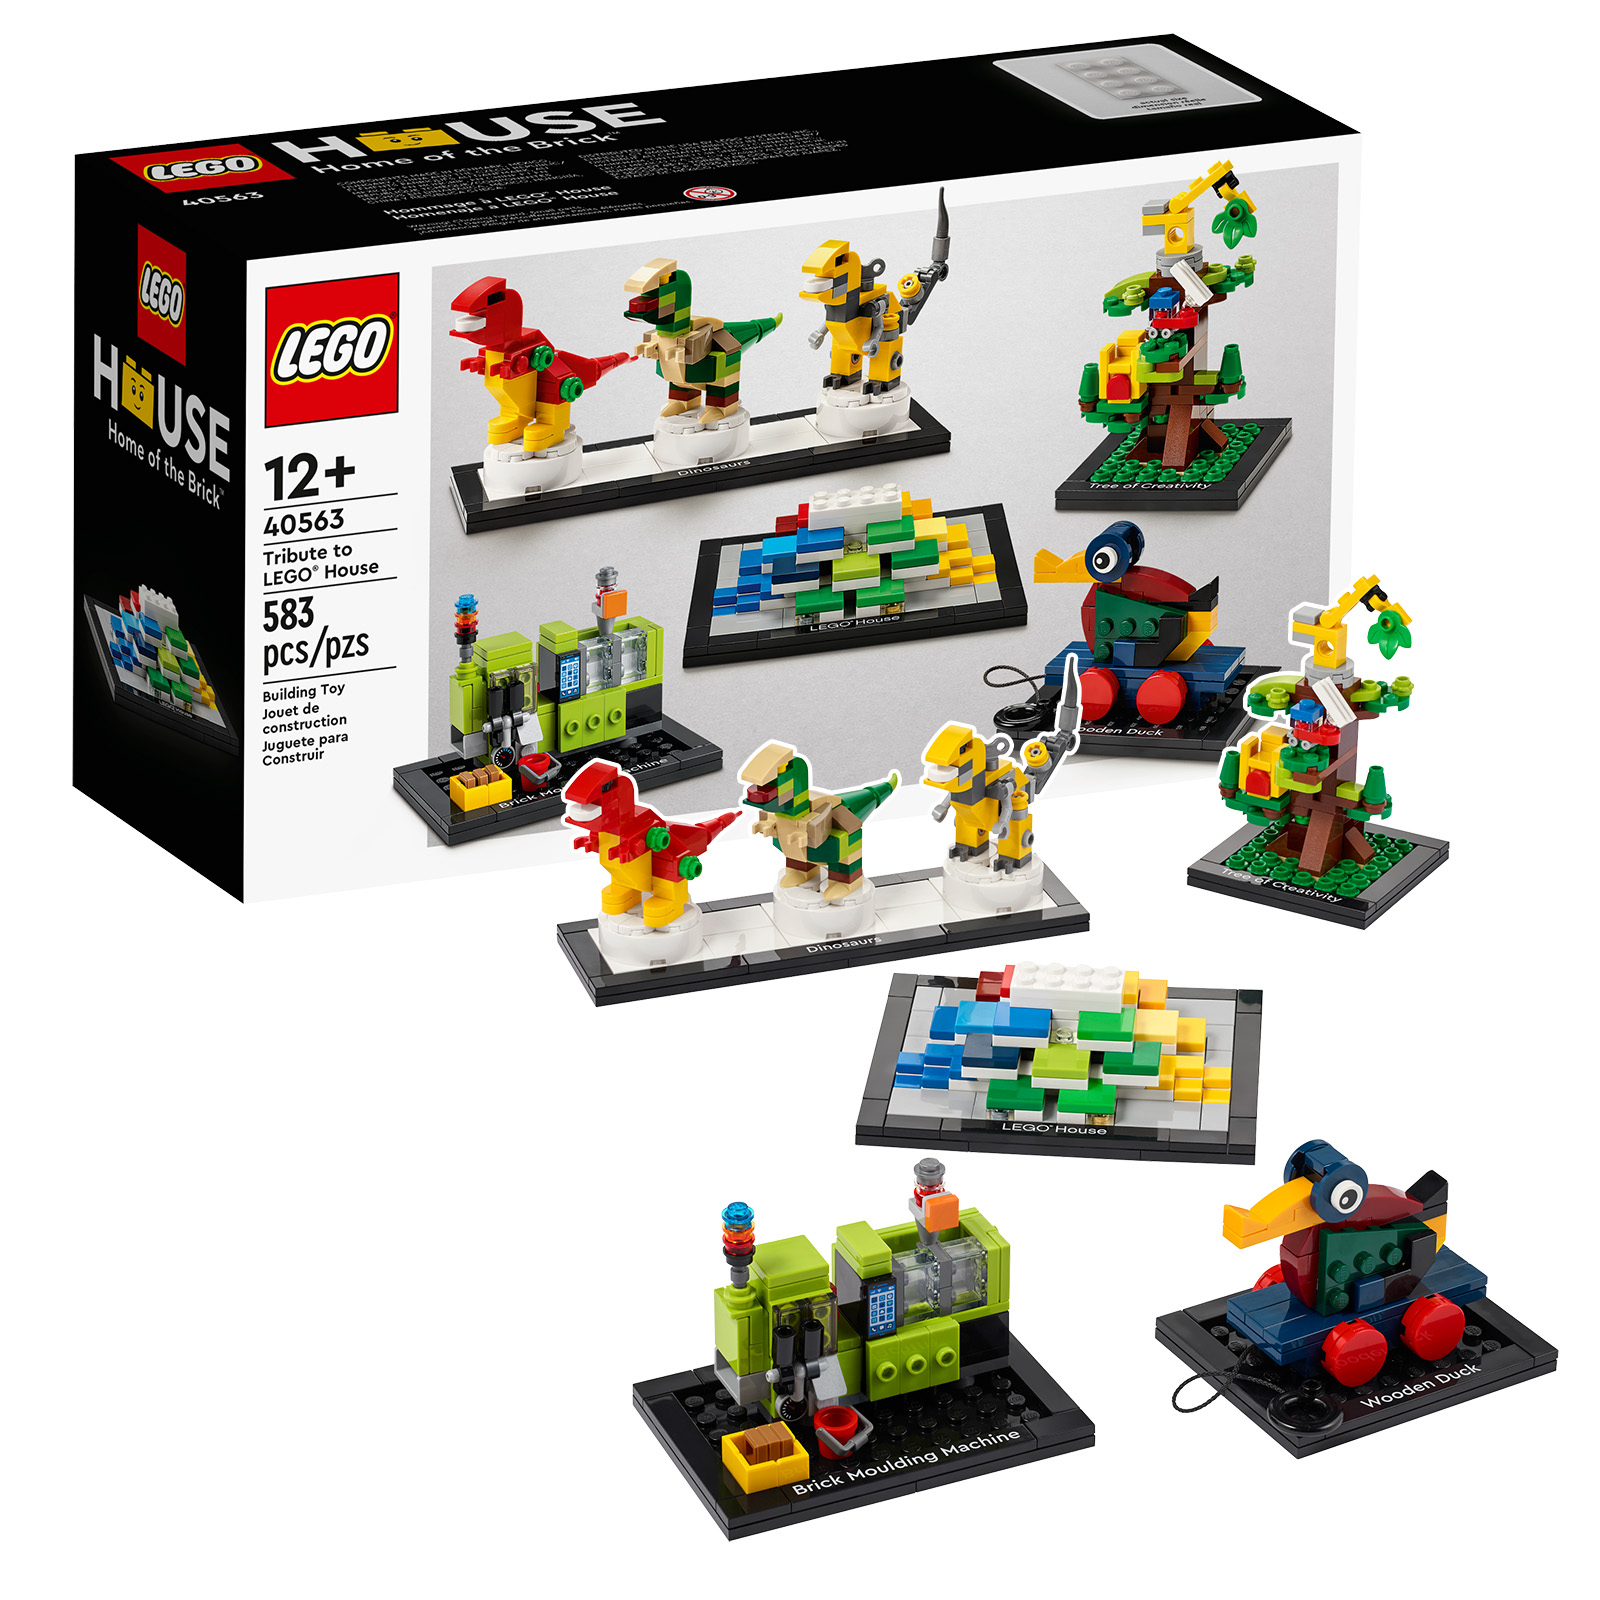 Priminimas: paskutinės valandos gauti LEGO 40563 Tribute to LEGO House rinkinio kopiją